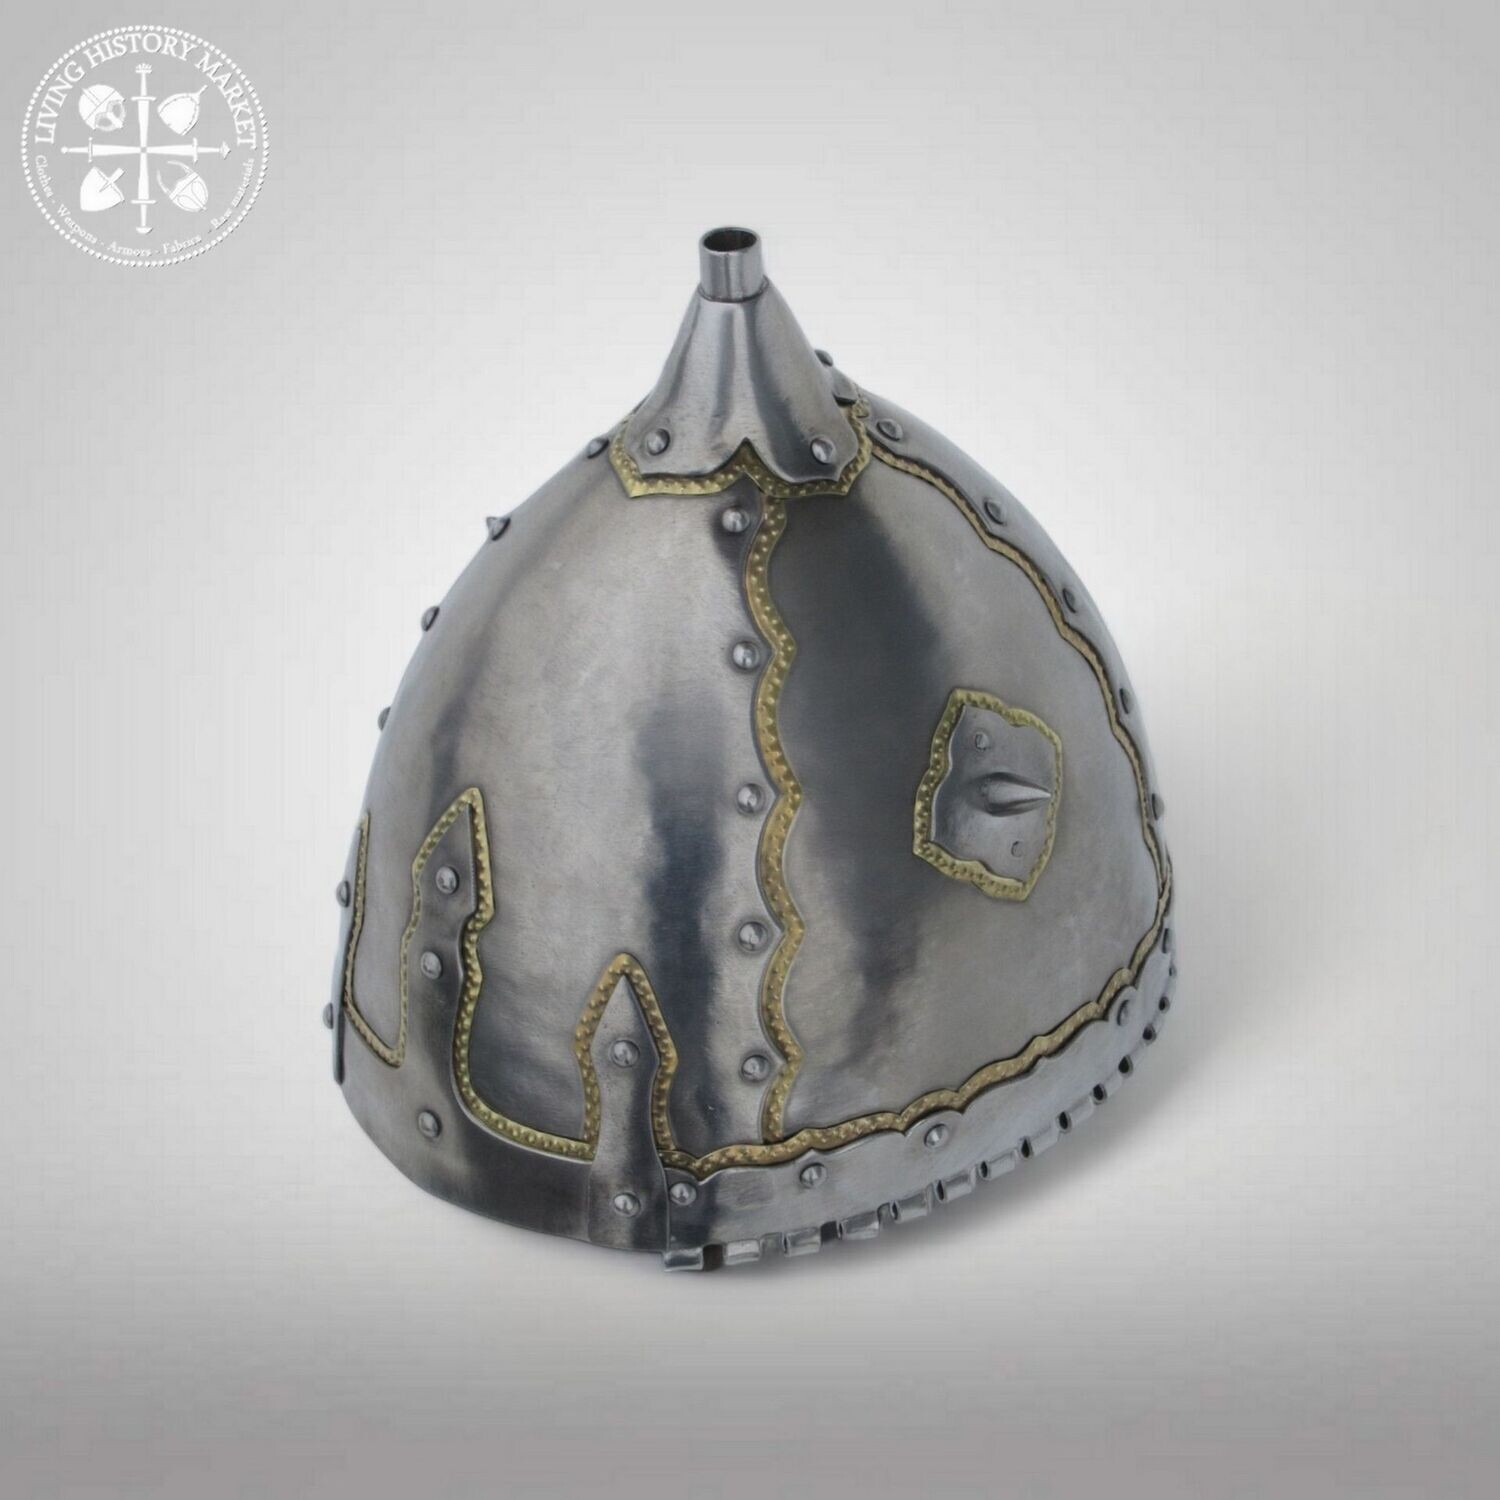 Black-grave helmet (Chernigov - 